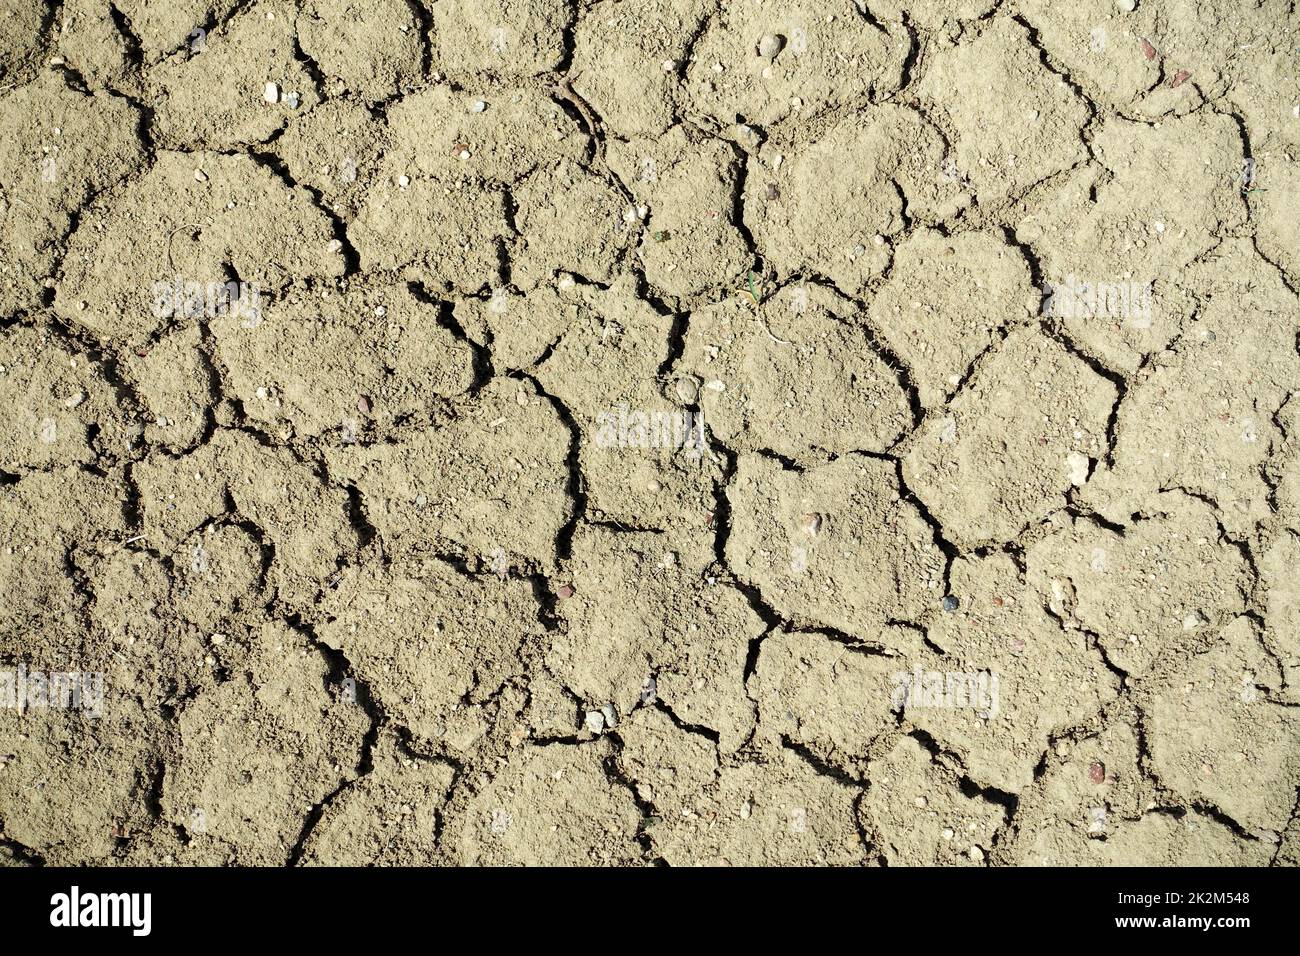 Craquage et fractionnement des sols dus à la soif, à l'érosion des sols et à la sécheresse, à l'érosion causée par la sécheresse et la désertification Banque D'Images